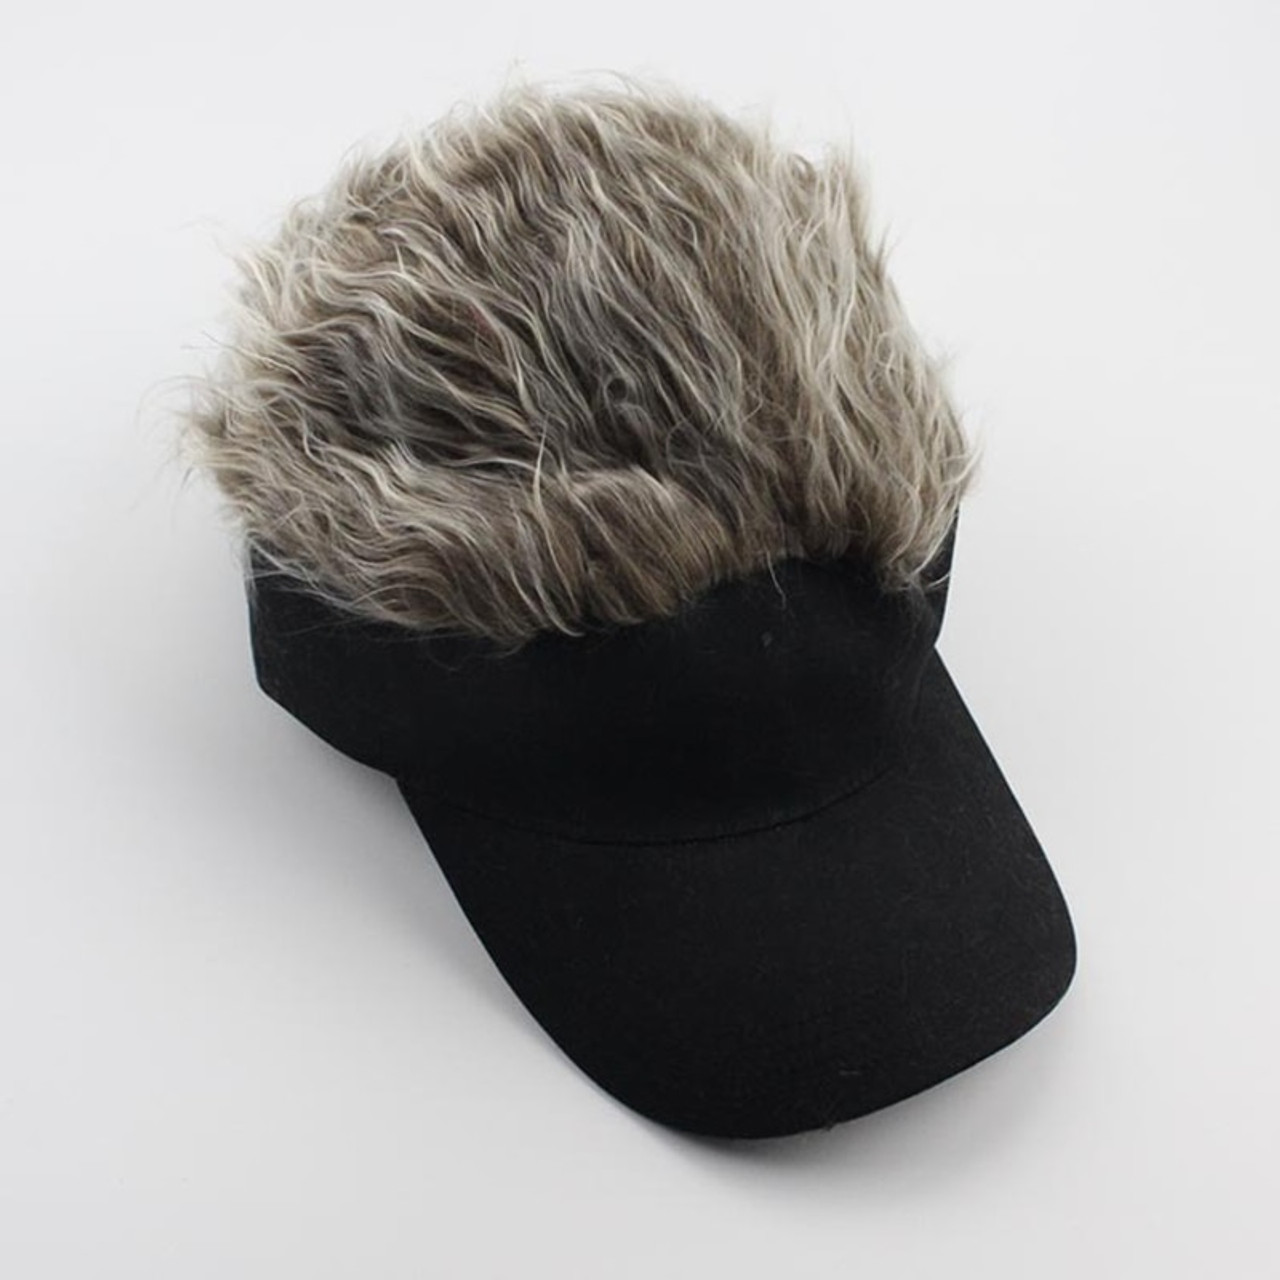 wig cap for men